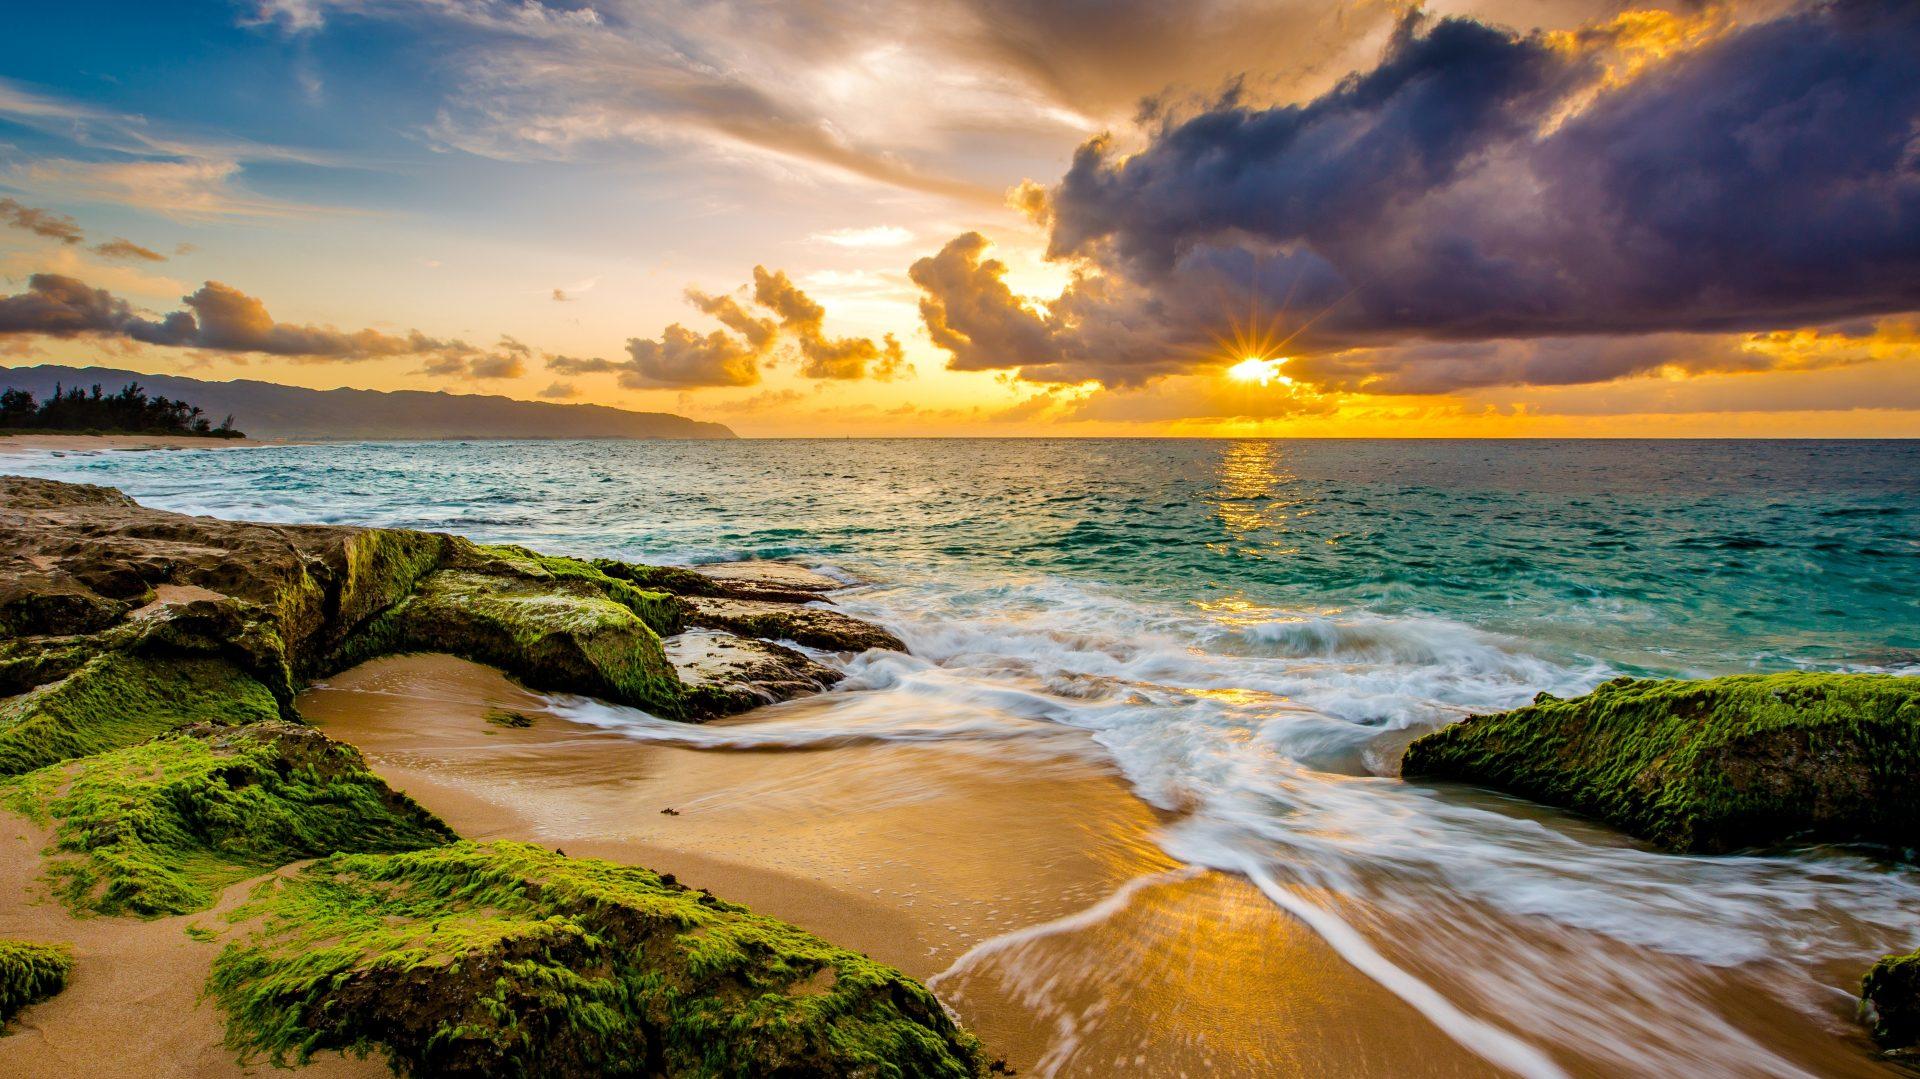 I Sunset Ocean Beach Waves Clouds 4k Ultra HD Wallpaper Eyecandy